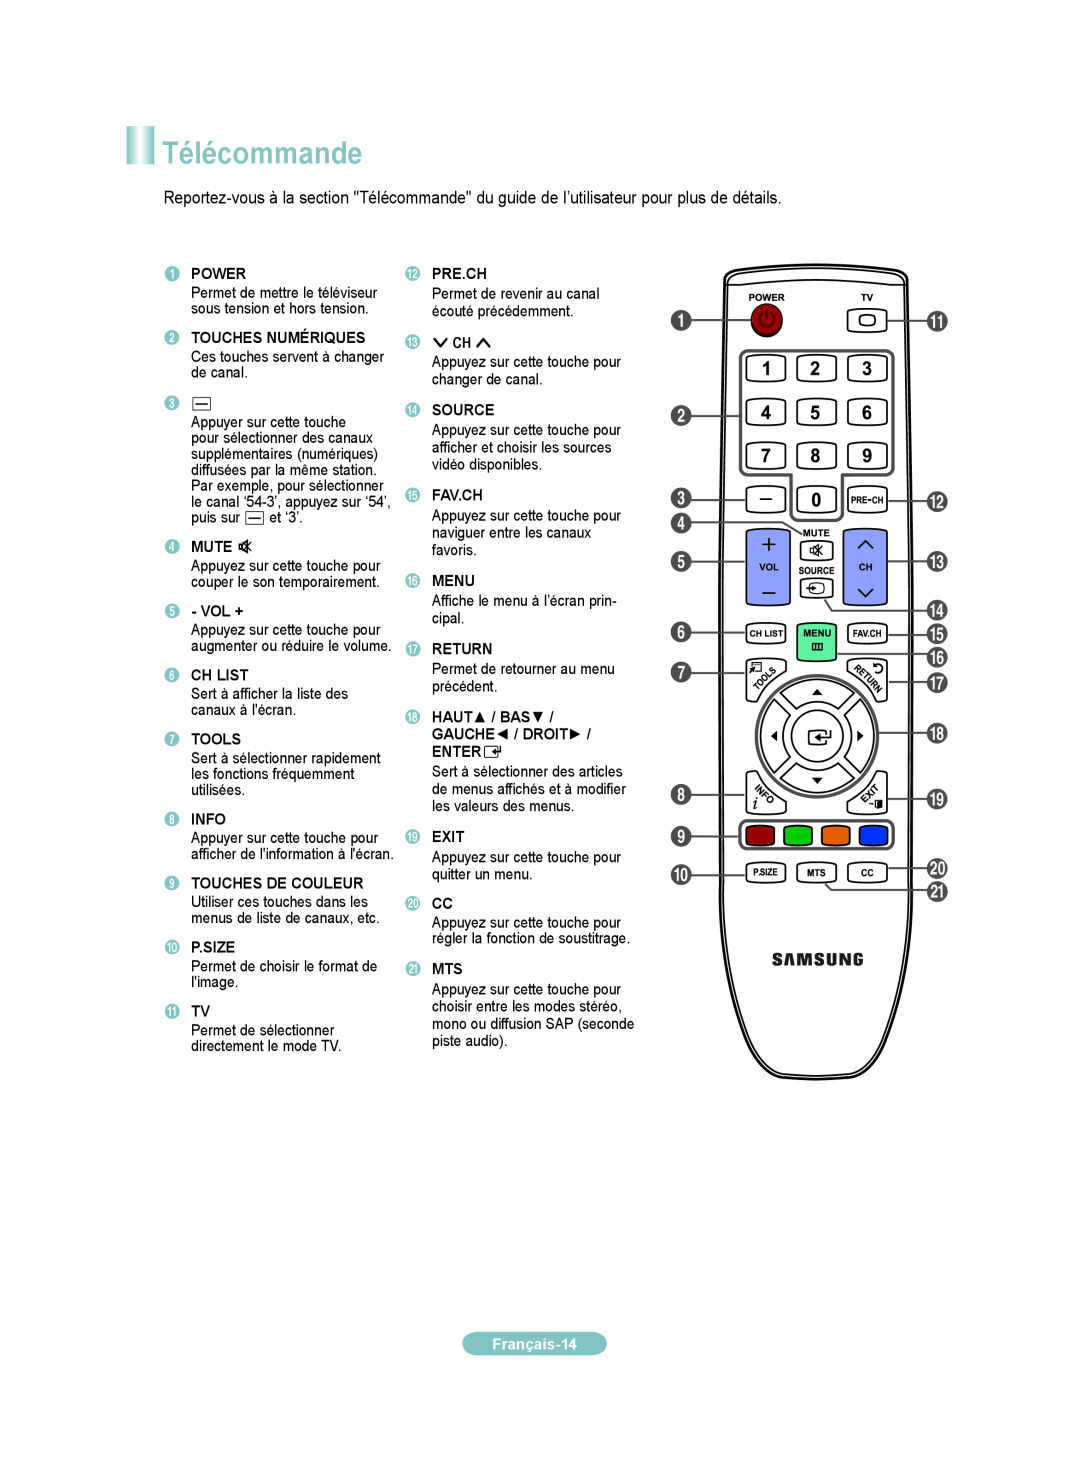 Samsung LN19B650, LN22B650 setup guide Télécommande, @ # $, Français-14 